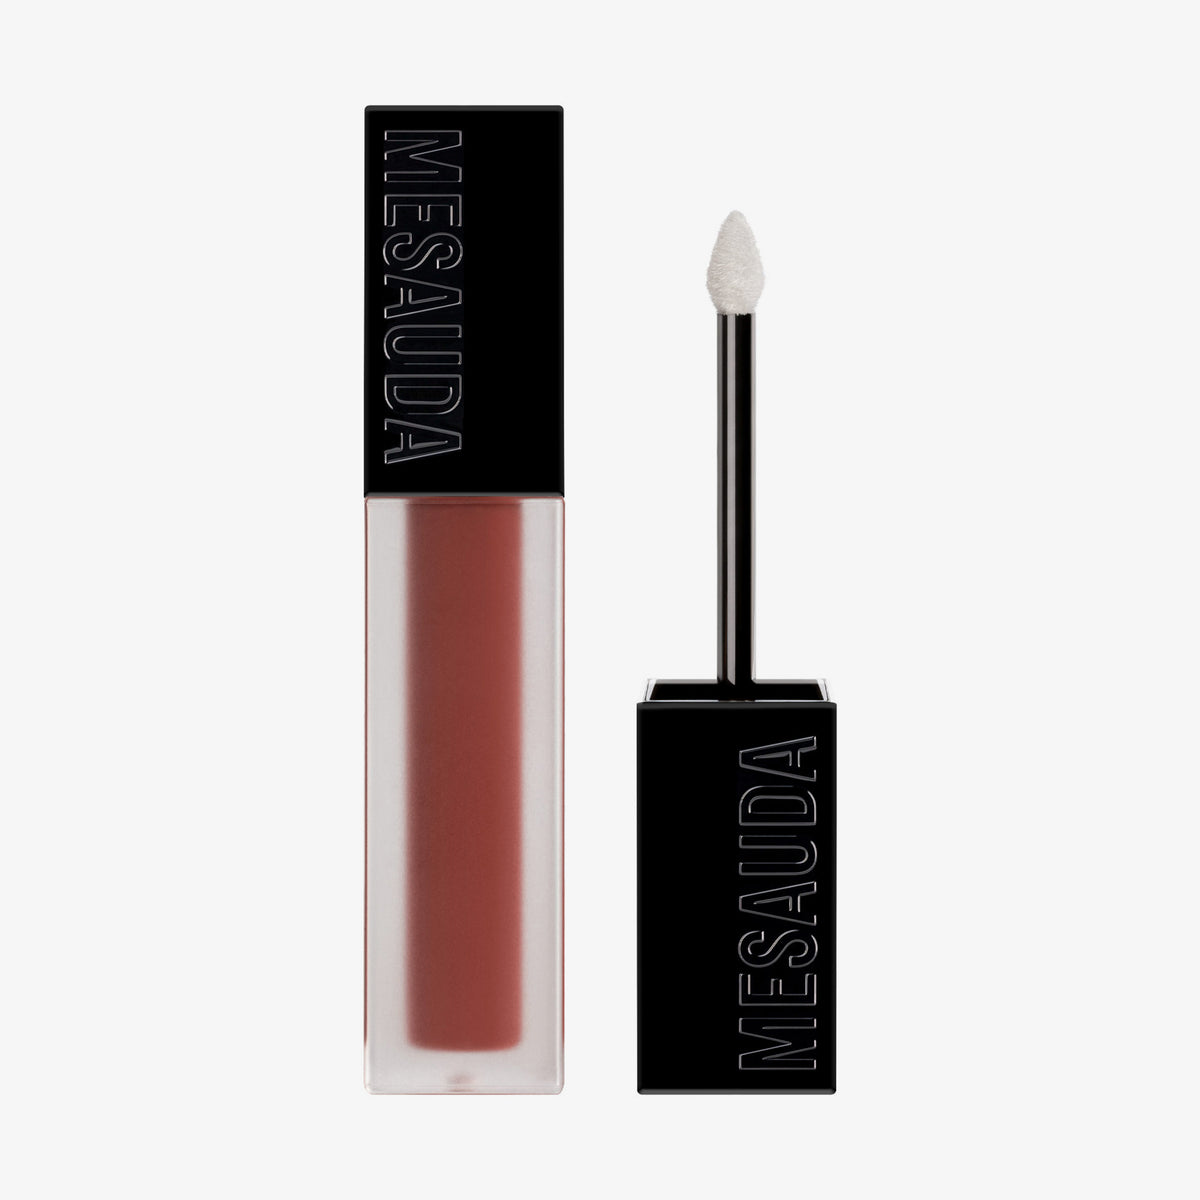 Mesauda Milano | Sublimatte Matte Liquid Lipstick 205 Seductive